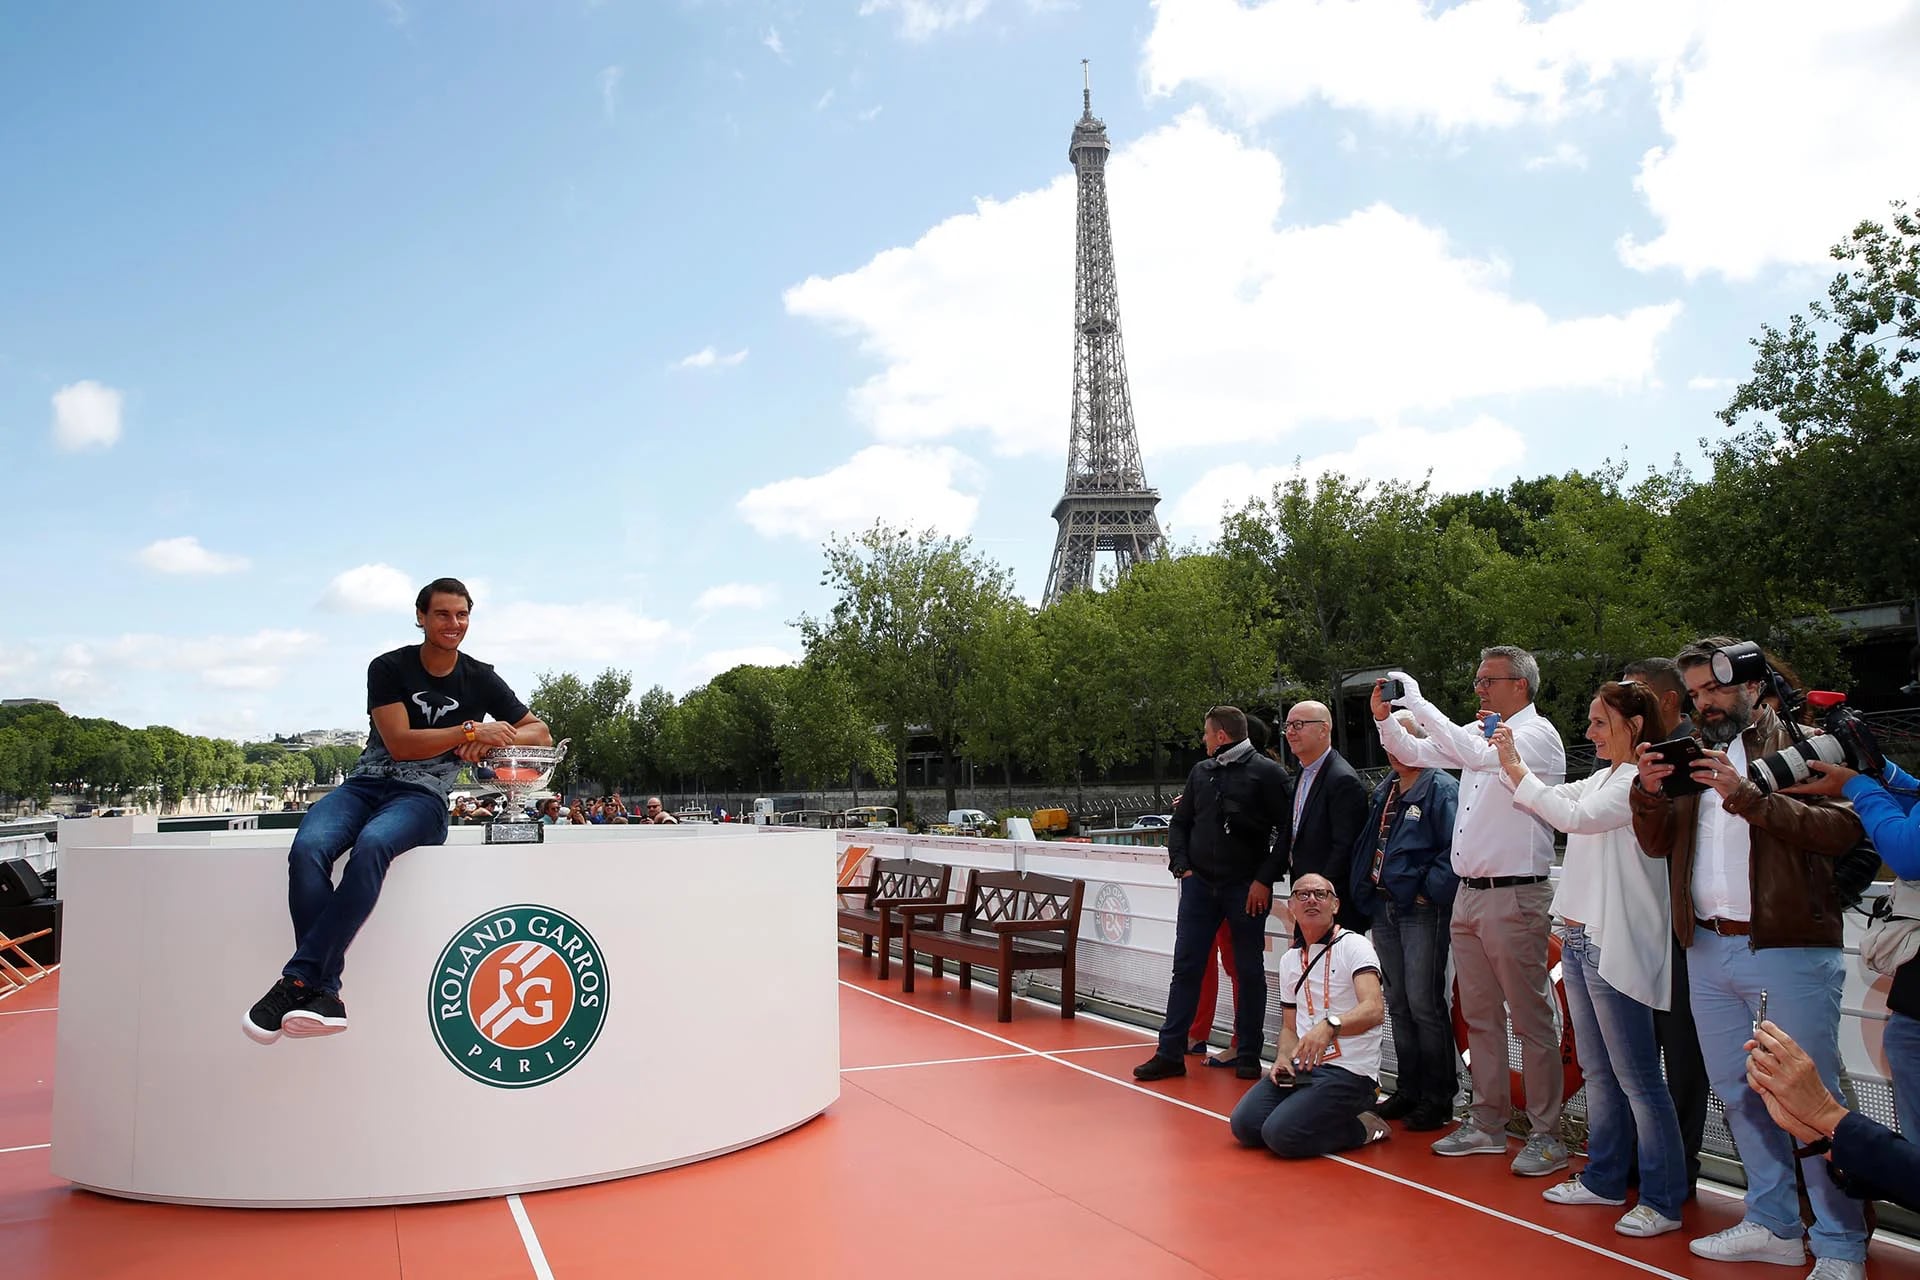 Rafael Nadal posó junto al trofeo de Roland Garros este lunes cerca de la Torre Eiffel, luego de obtener la décima corona al vencer a Stanislas Wawrinka (Reuters)